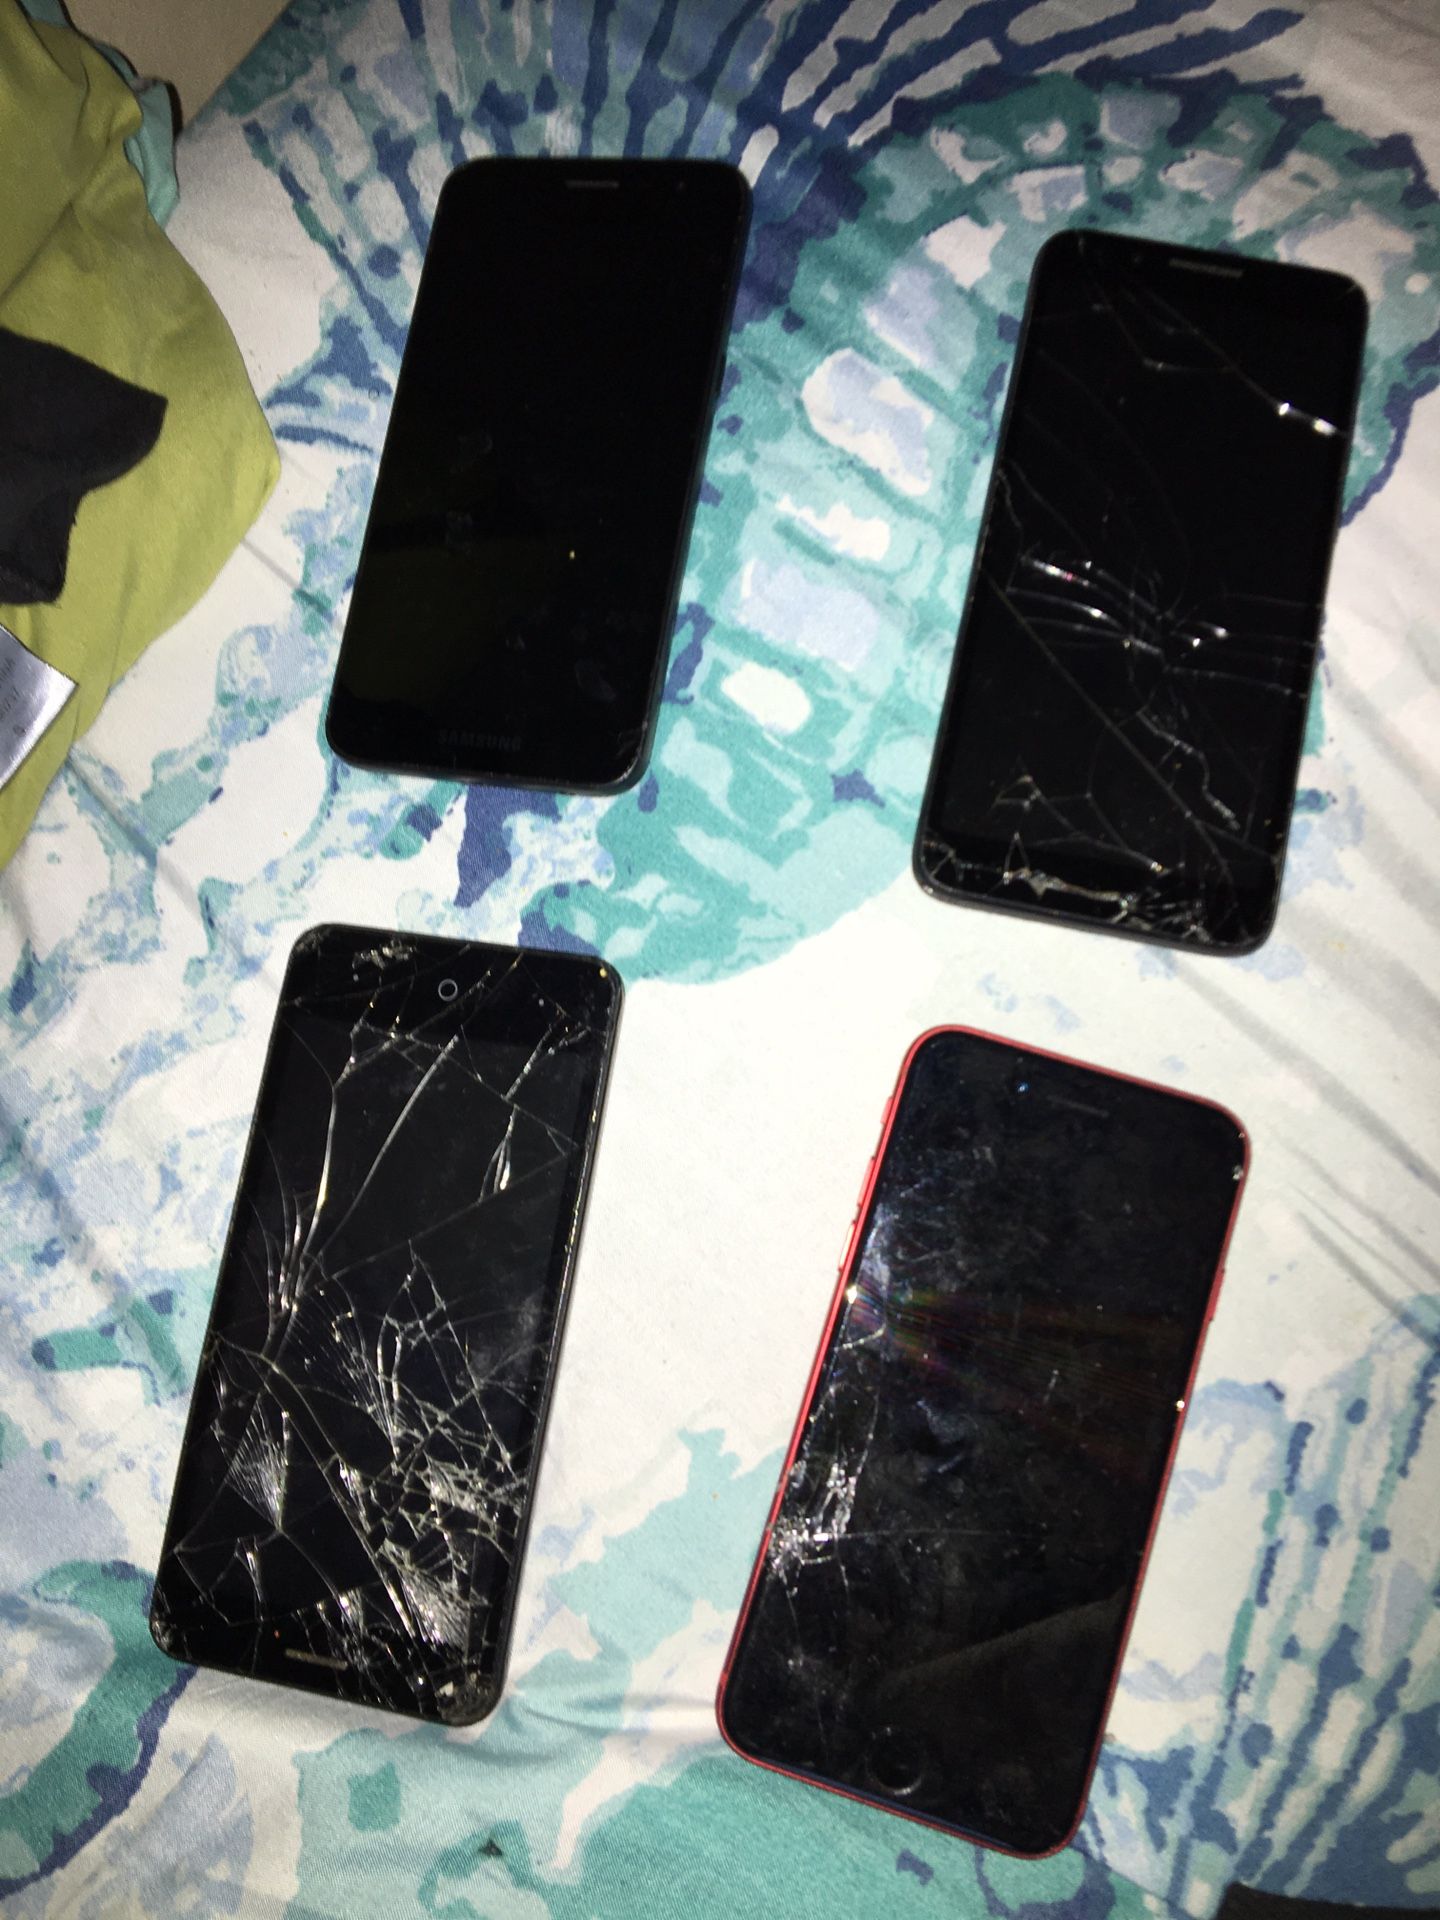 Five broken or locked phones